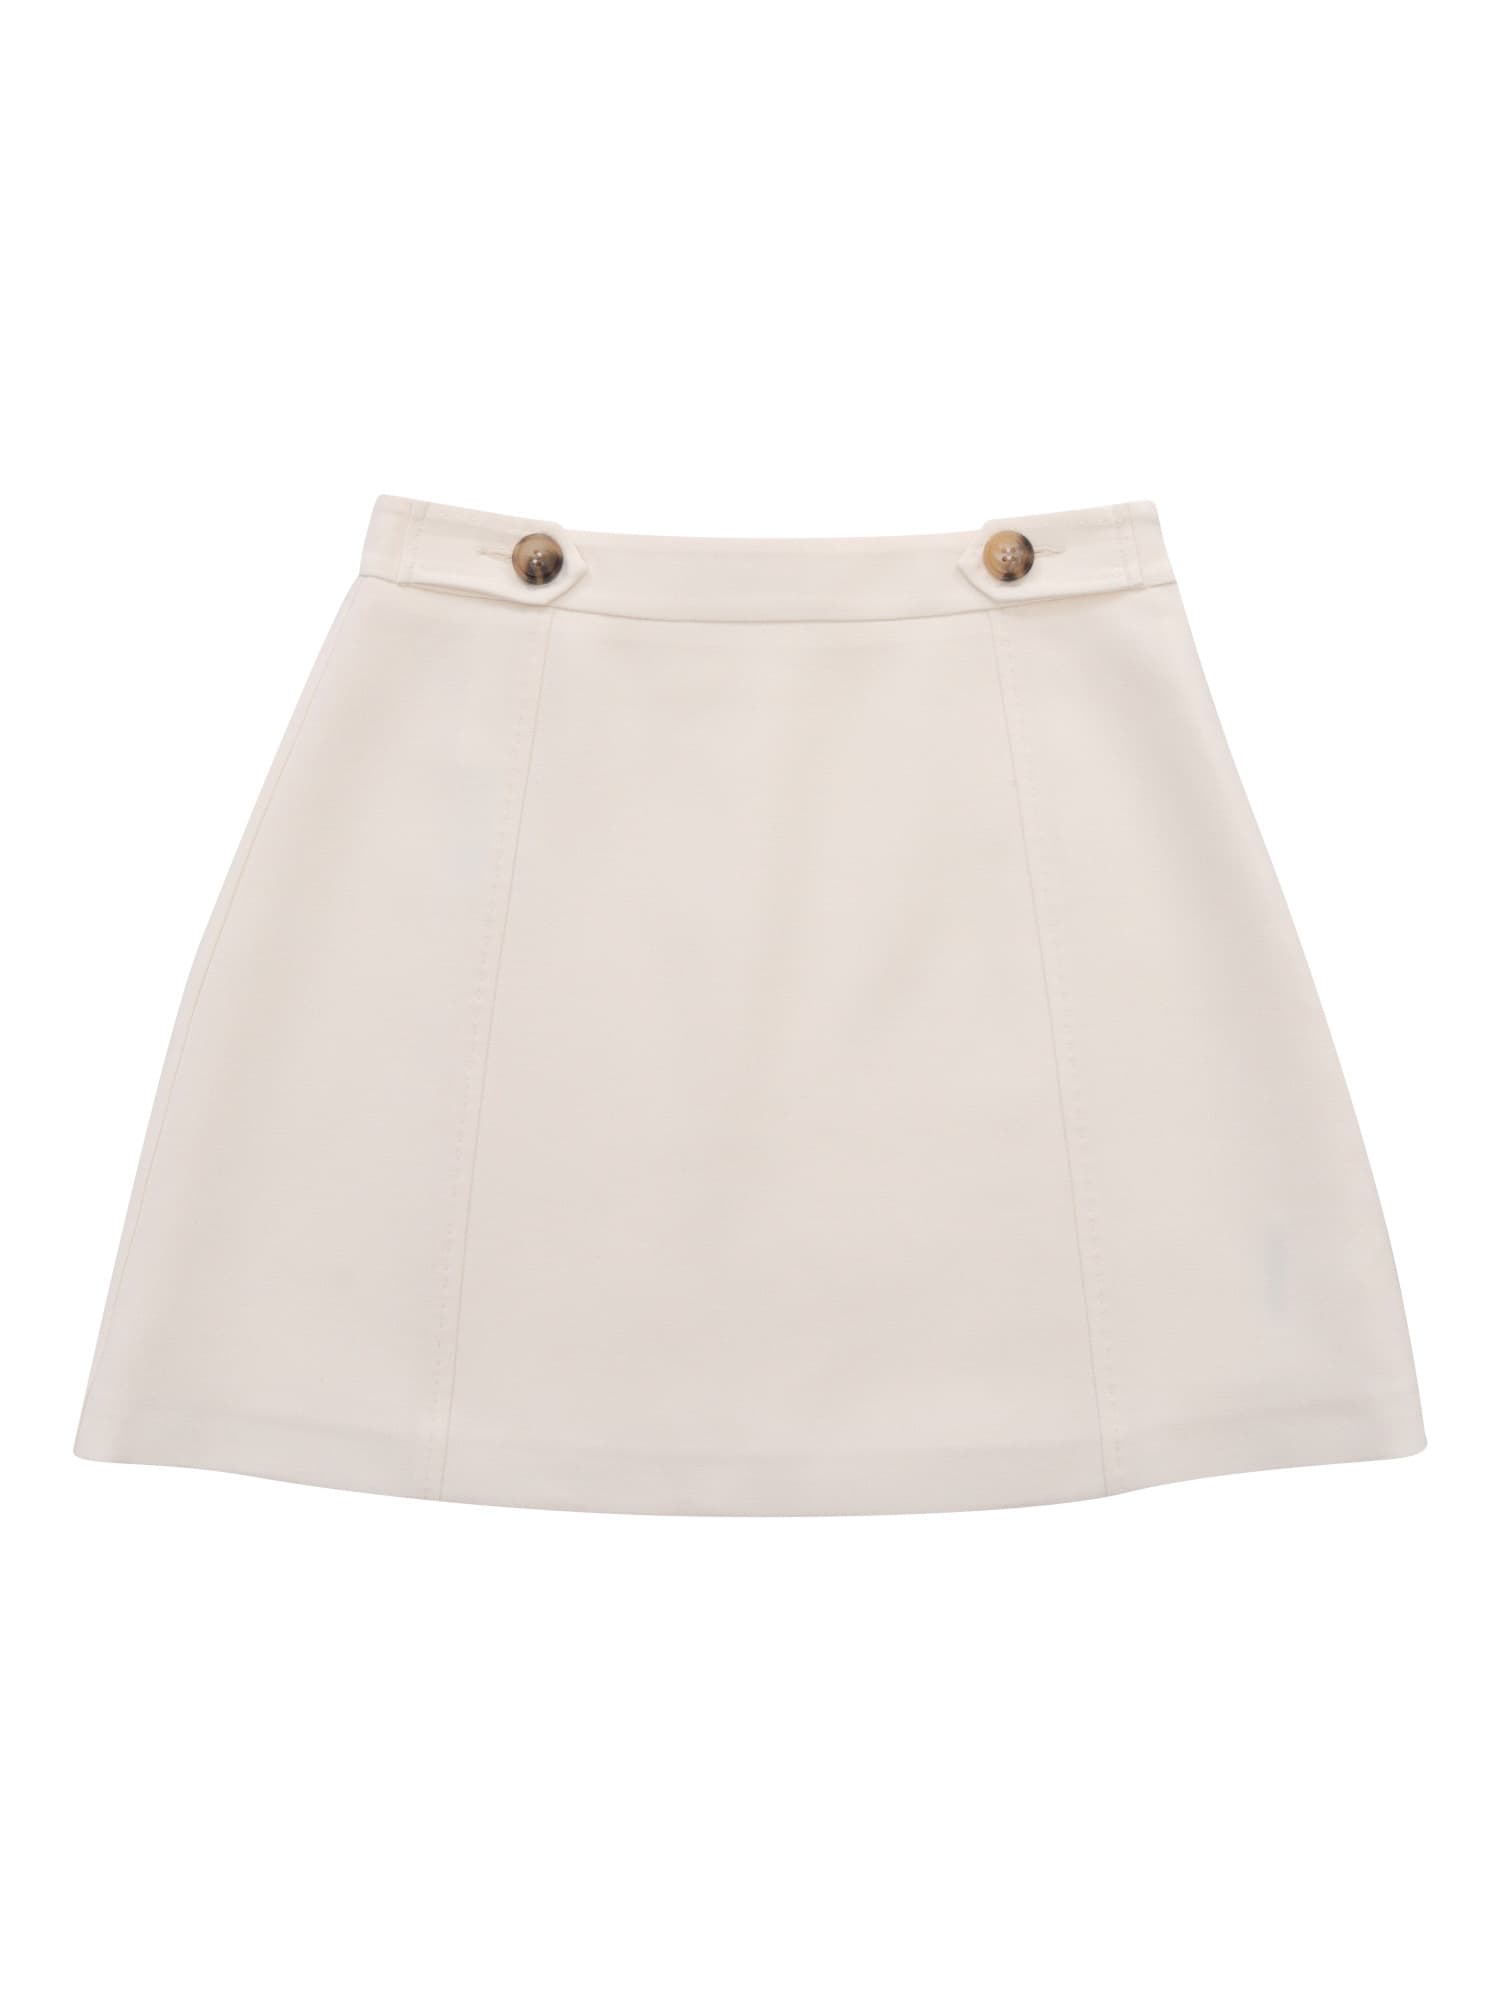 Max&amp;co. Kids' White Mini Skirt